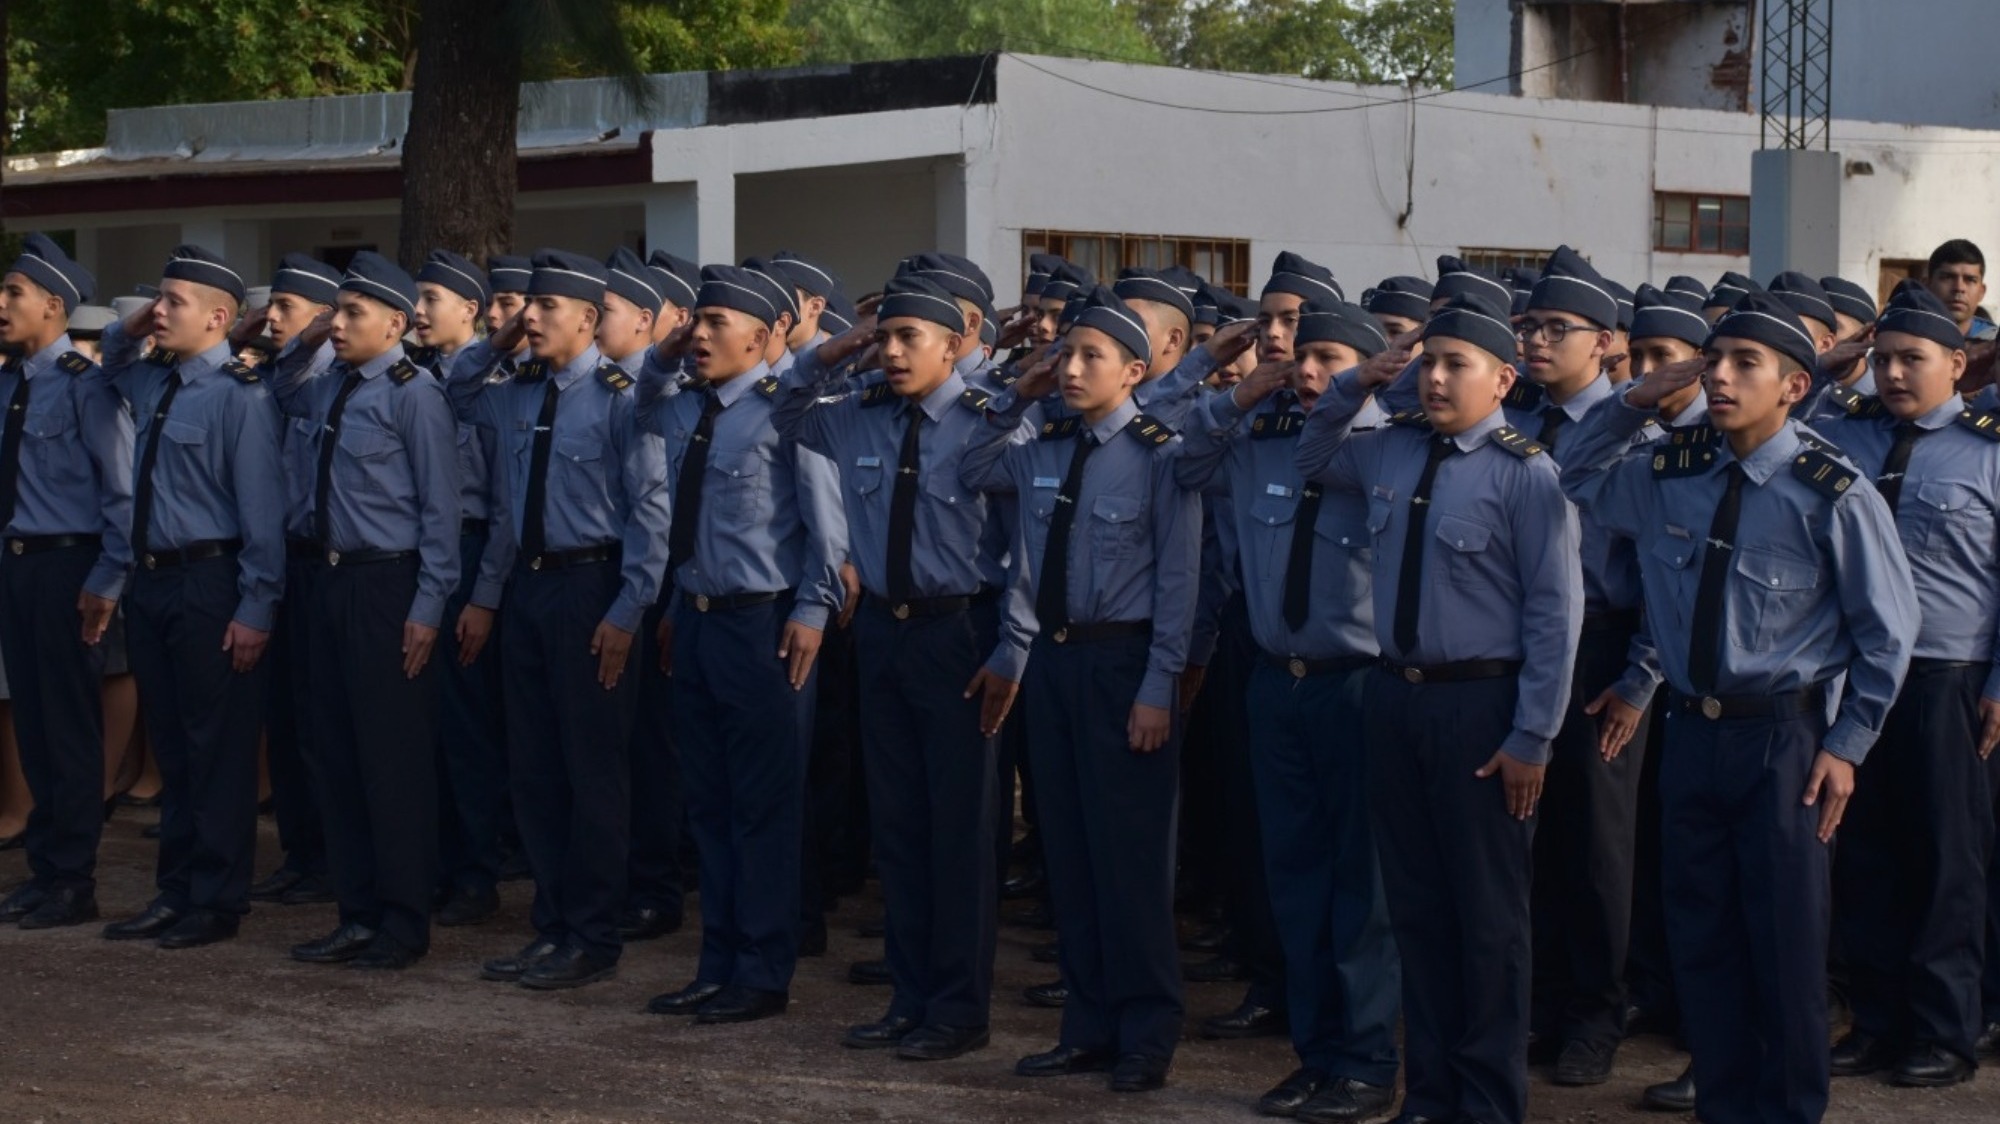 El Liceo Policial “Coronel Juan Francisco Borges” celebró su 35° aniversario con un emotivo acto